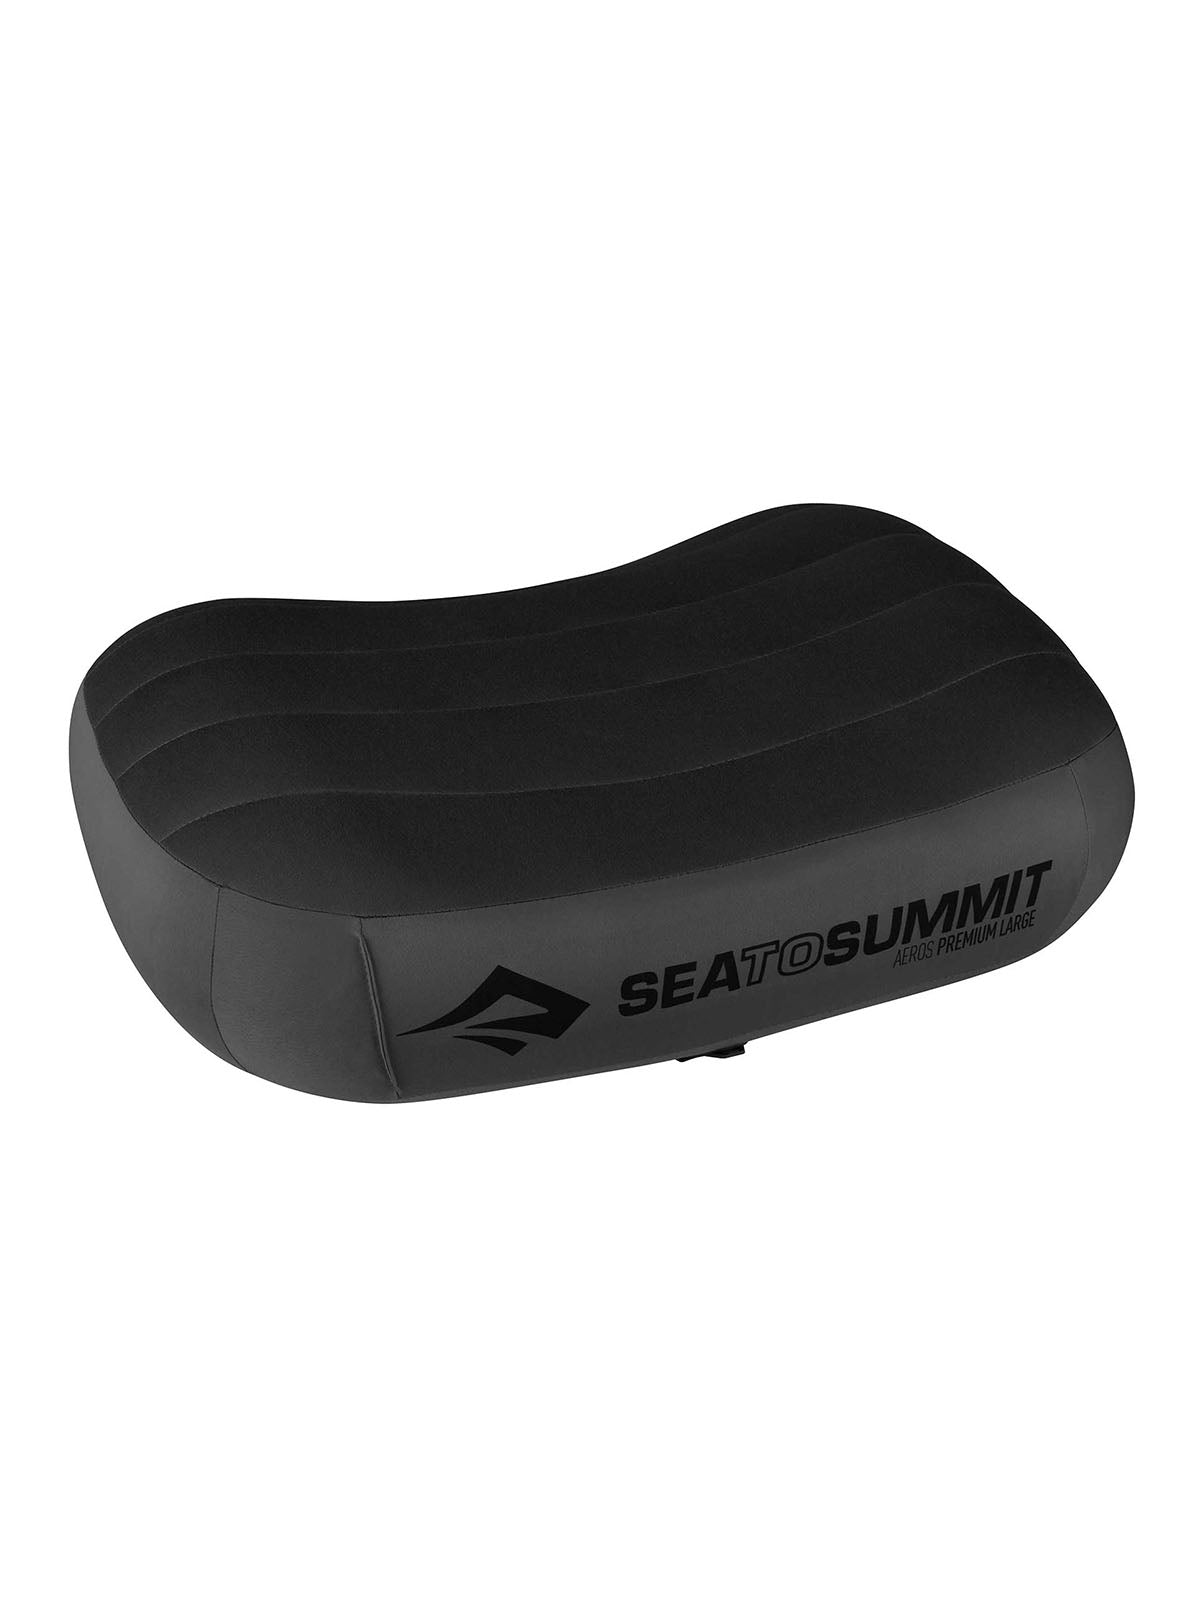 Sea To Summit Aeros Premium Pillow isometric view